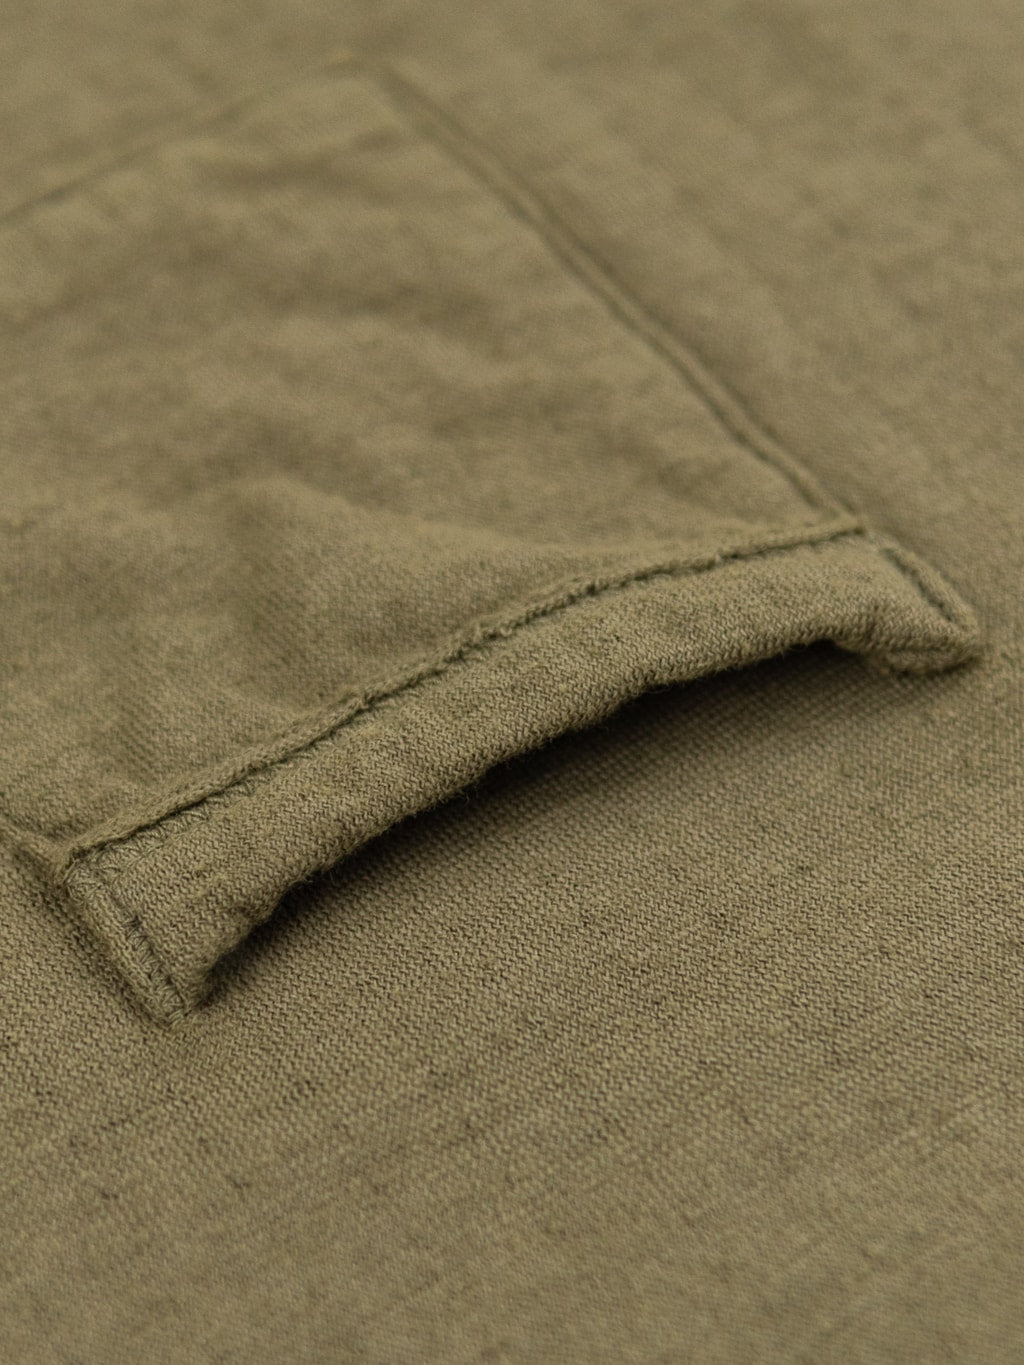 Loop and Weft Dual Layered Knit pocket TShirt olive pocket closeup